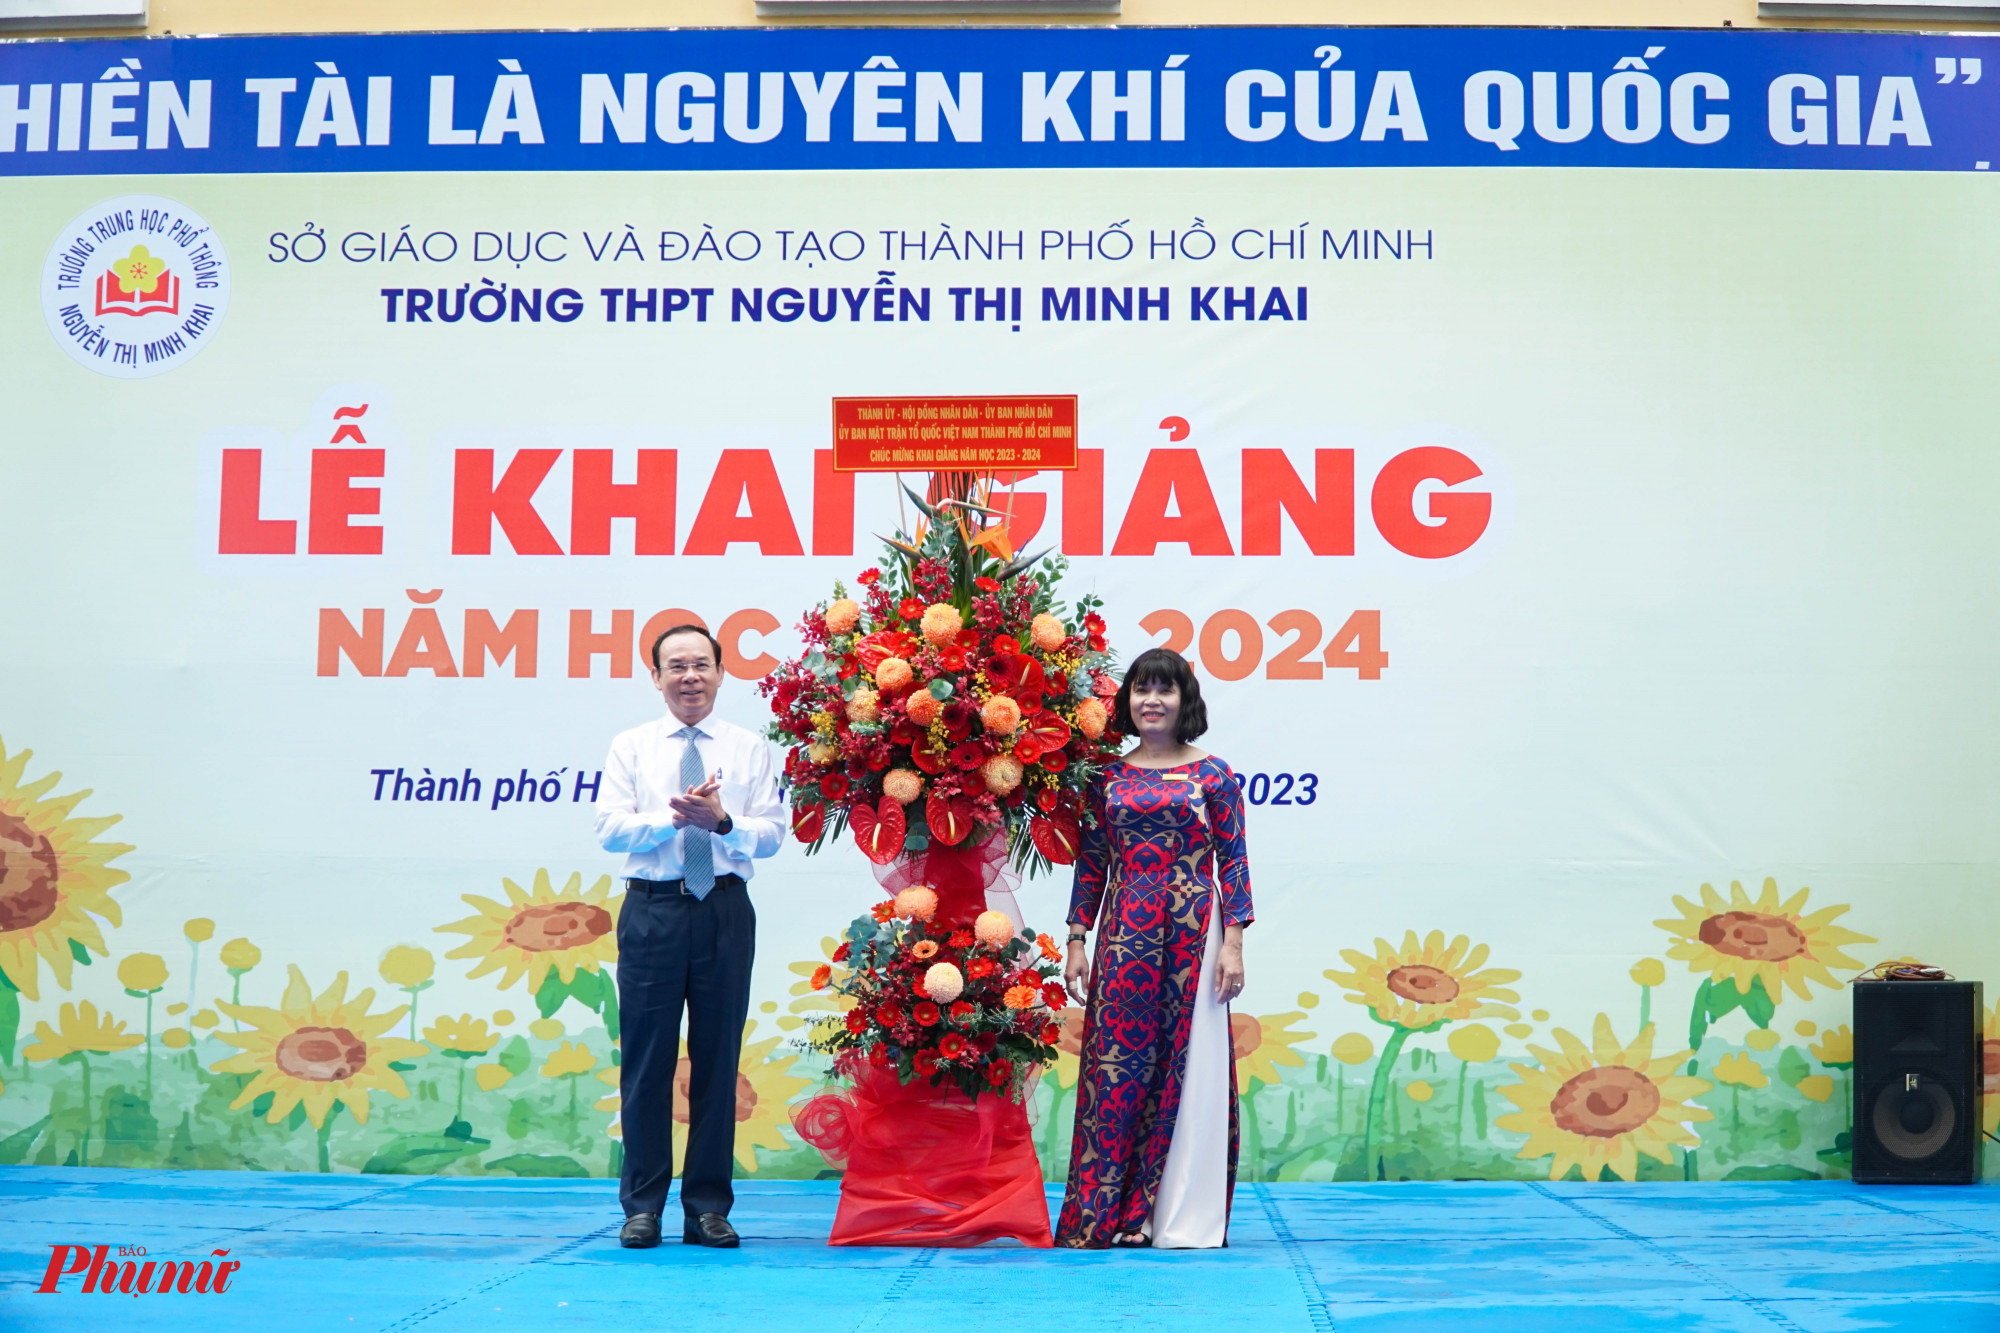 4; Bí thư Thành ủy Nguyễn Văn Nên tặng hoa chúc mừng Trường THPT Nguyễn Thị Minh Khai nhân ngày khai giảng.